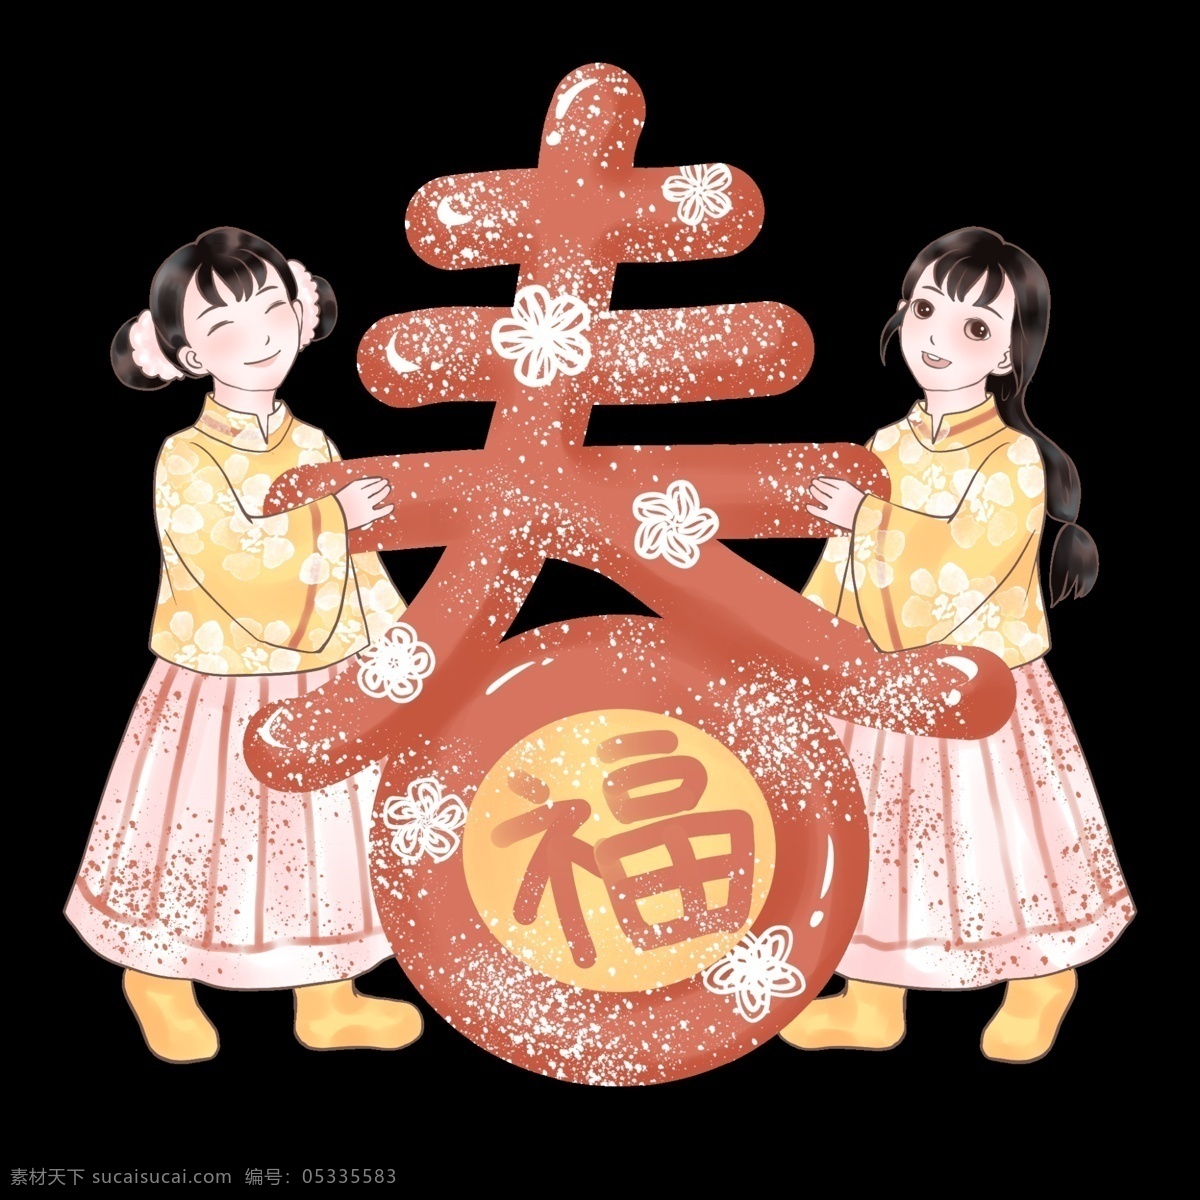 吉祥如意 贺 新春 福 满门 新年快乐 新中式 中国风 手绘卡通人物 红色 猪年吉祥 2019 农历 新年 传统春节